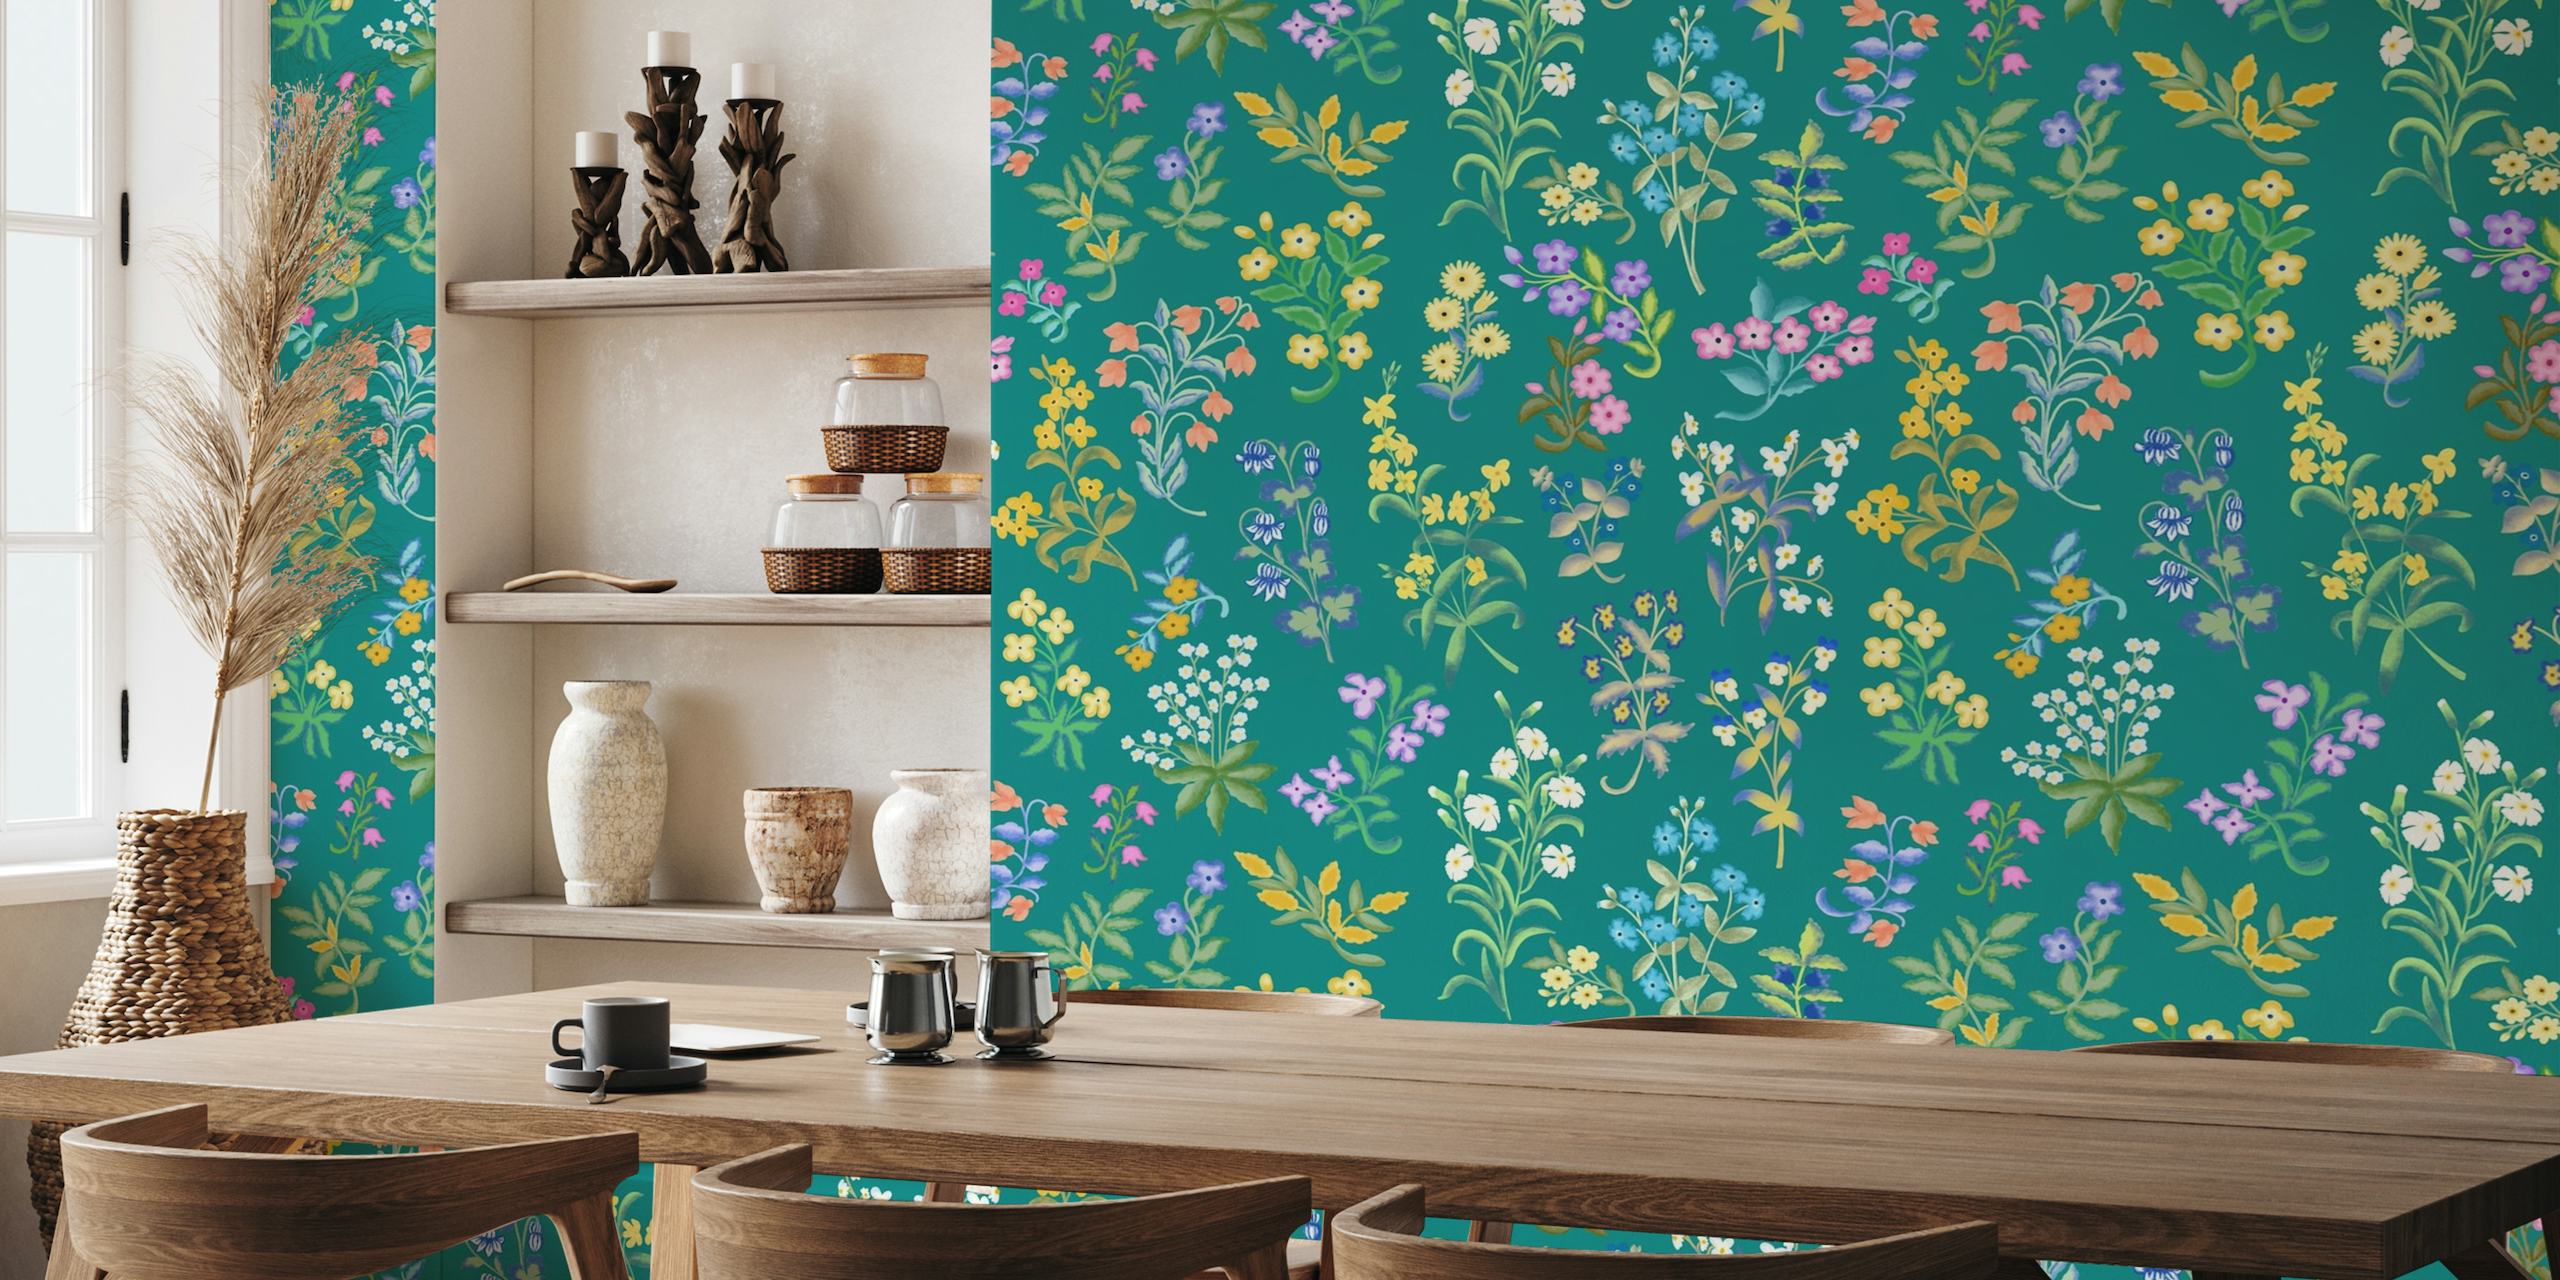 Muurschildering met bloemenmillefleurspatroon met wilde bloemen op een blauwgroen achtergrond